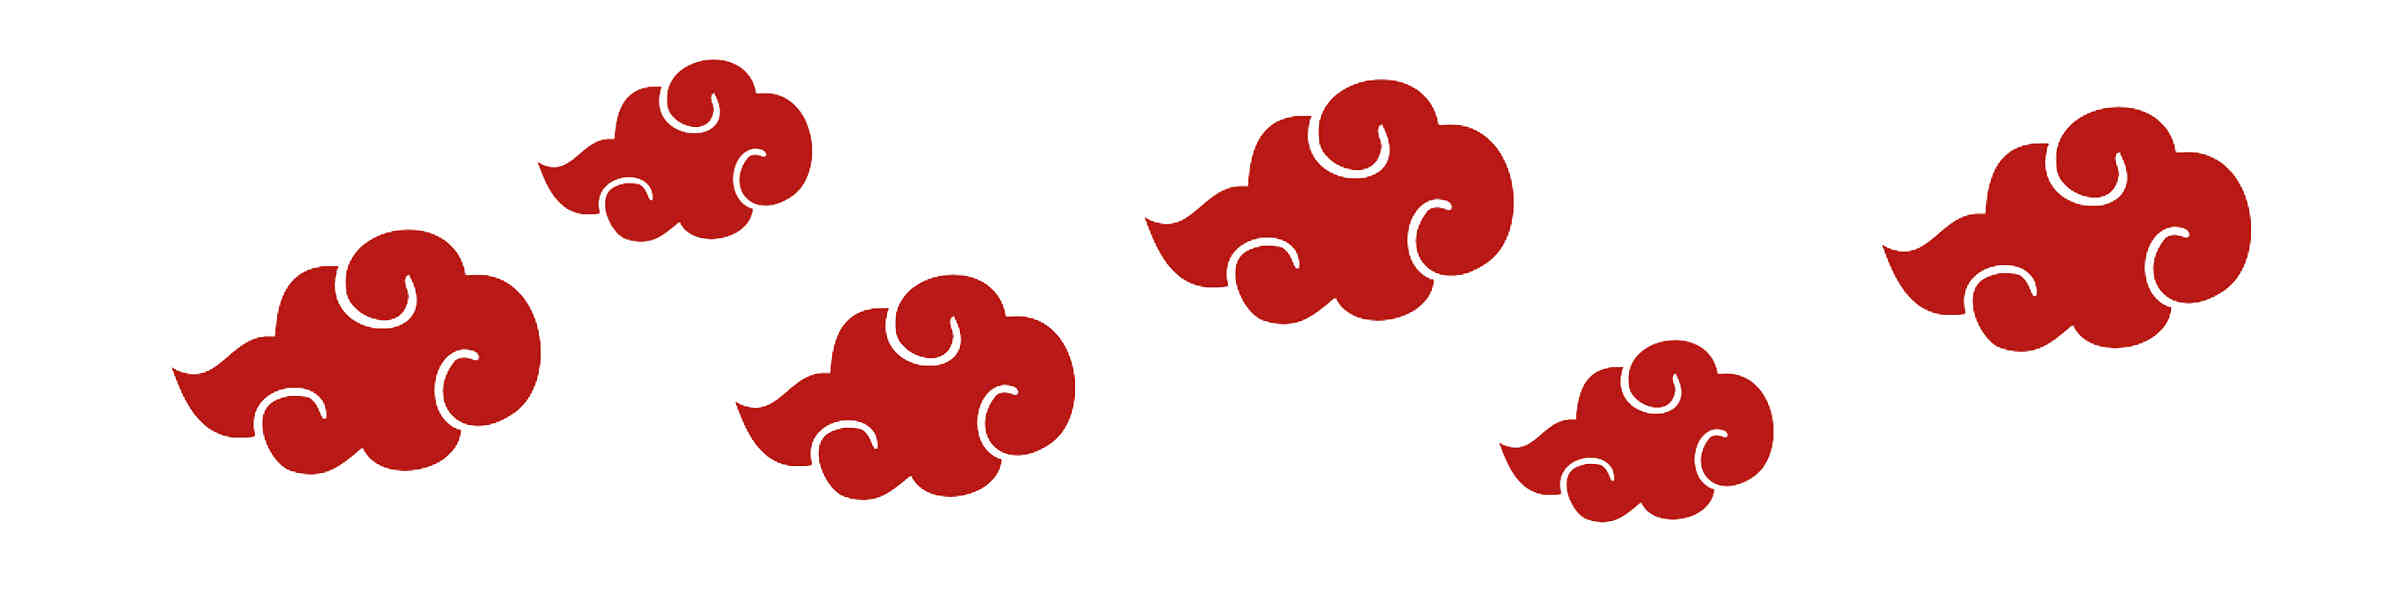 Download Logo Akatsuki Free Transparent Image HQ HQ PNG Image